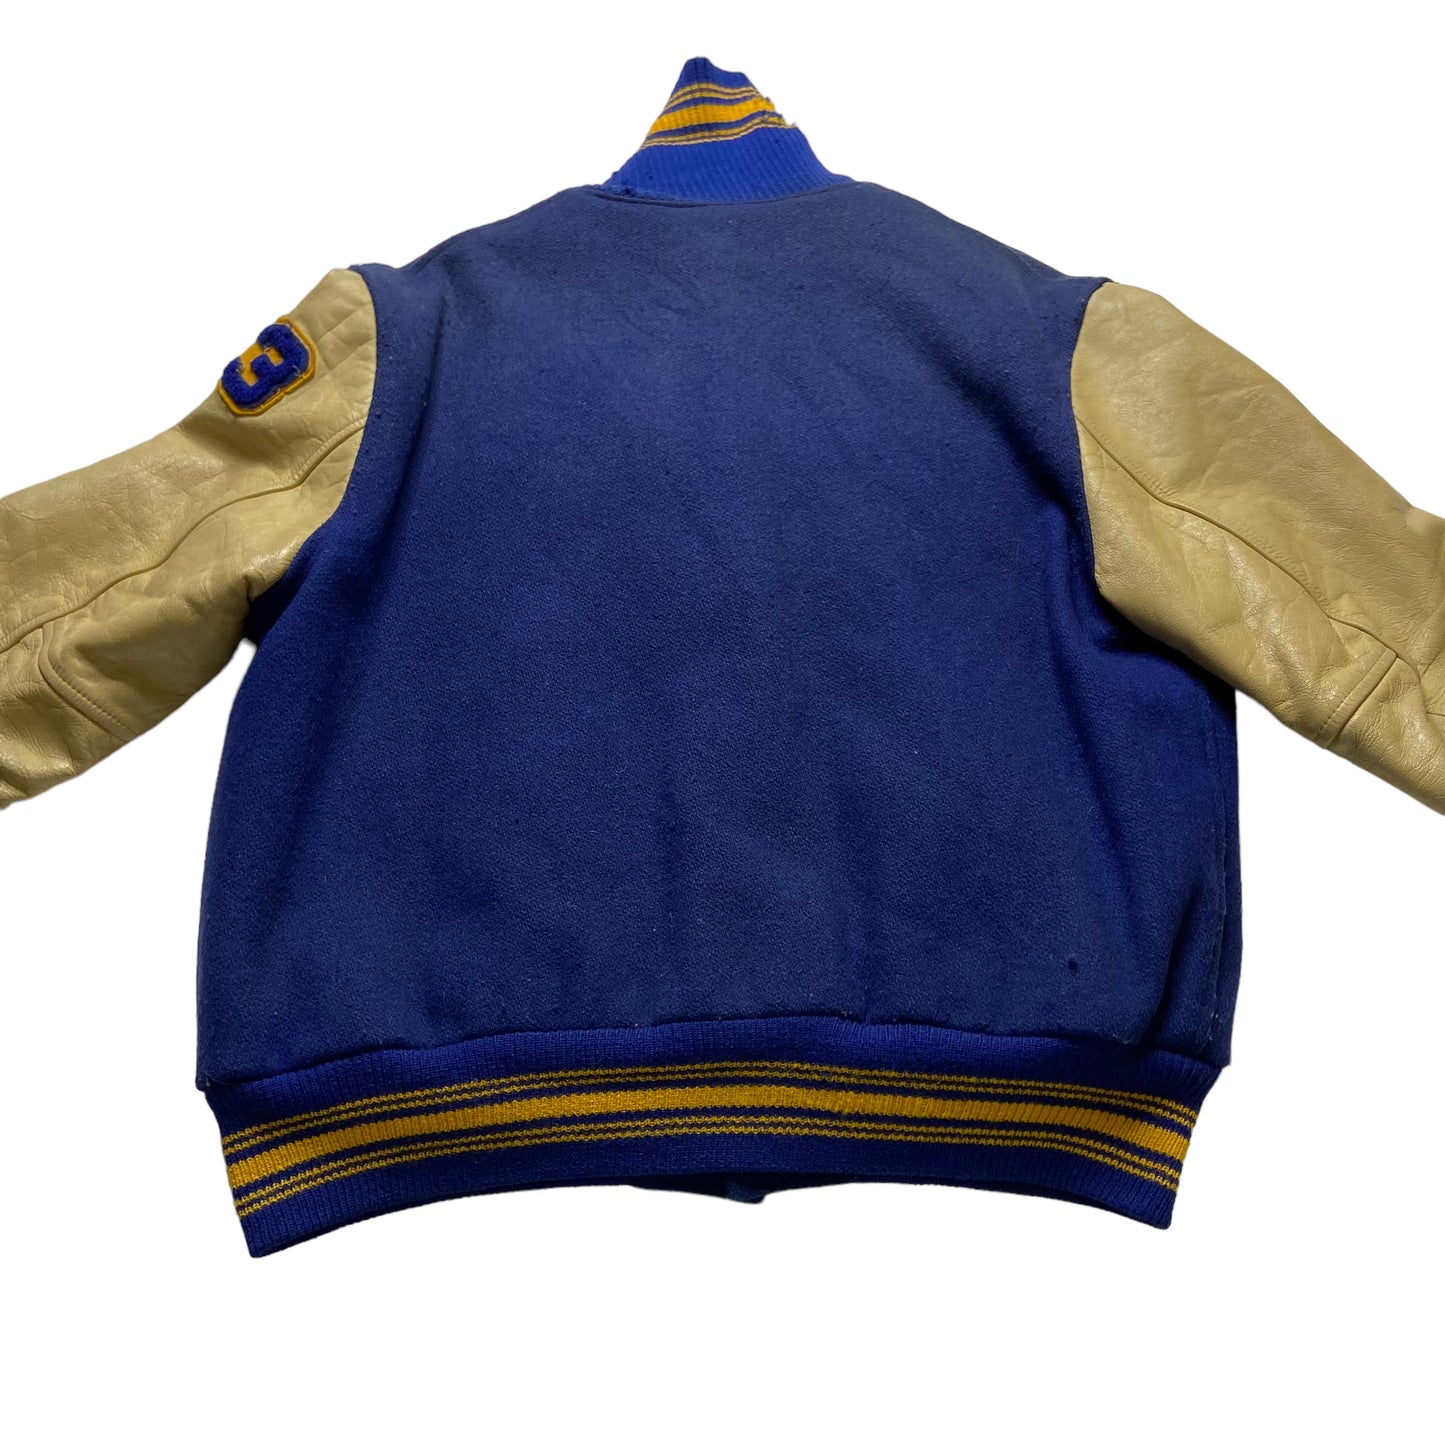 Vintage 1983 Cloverdale Eagles High School Varsity Jacket Size Large